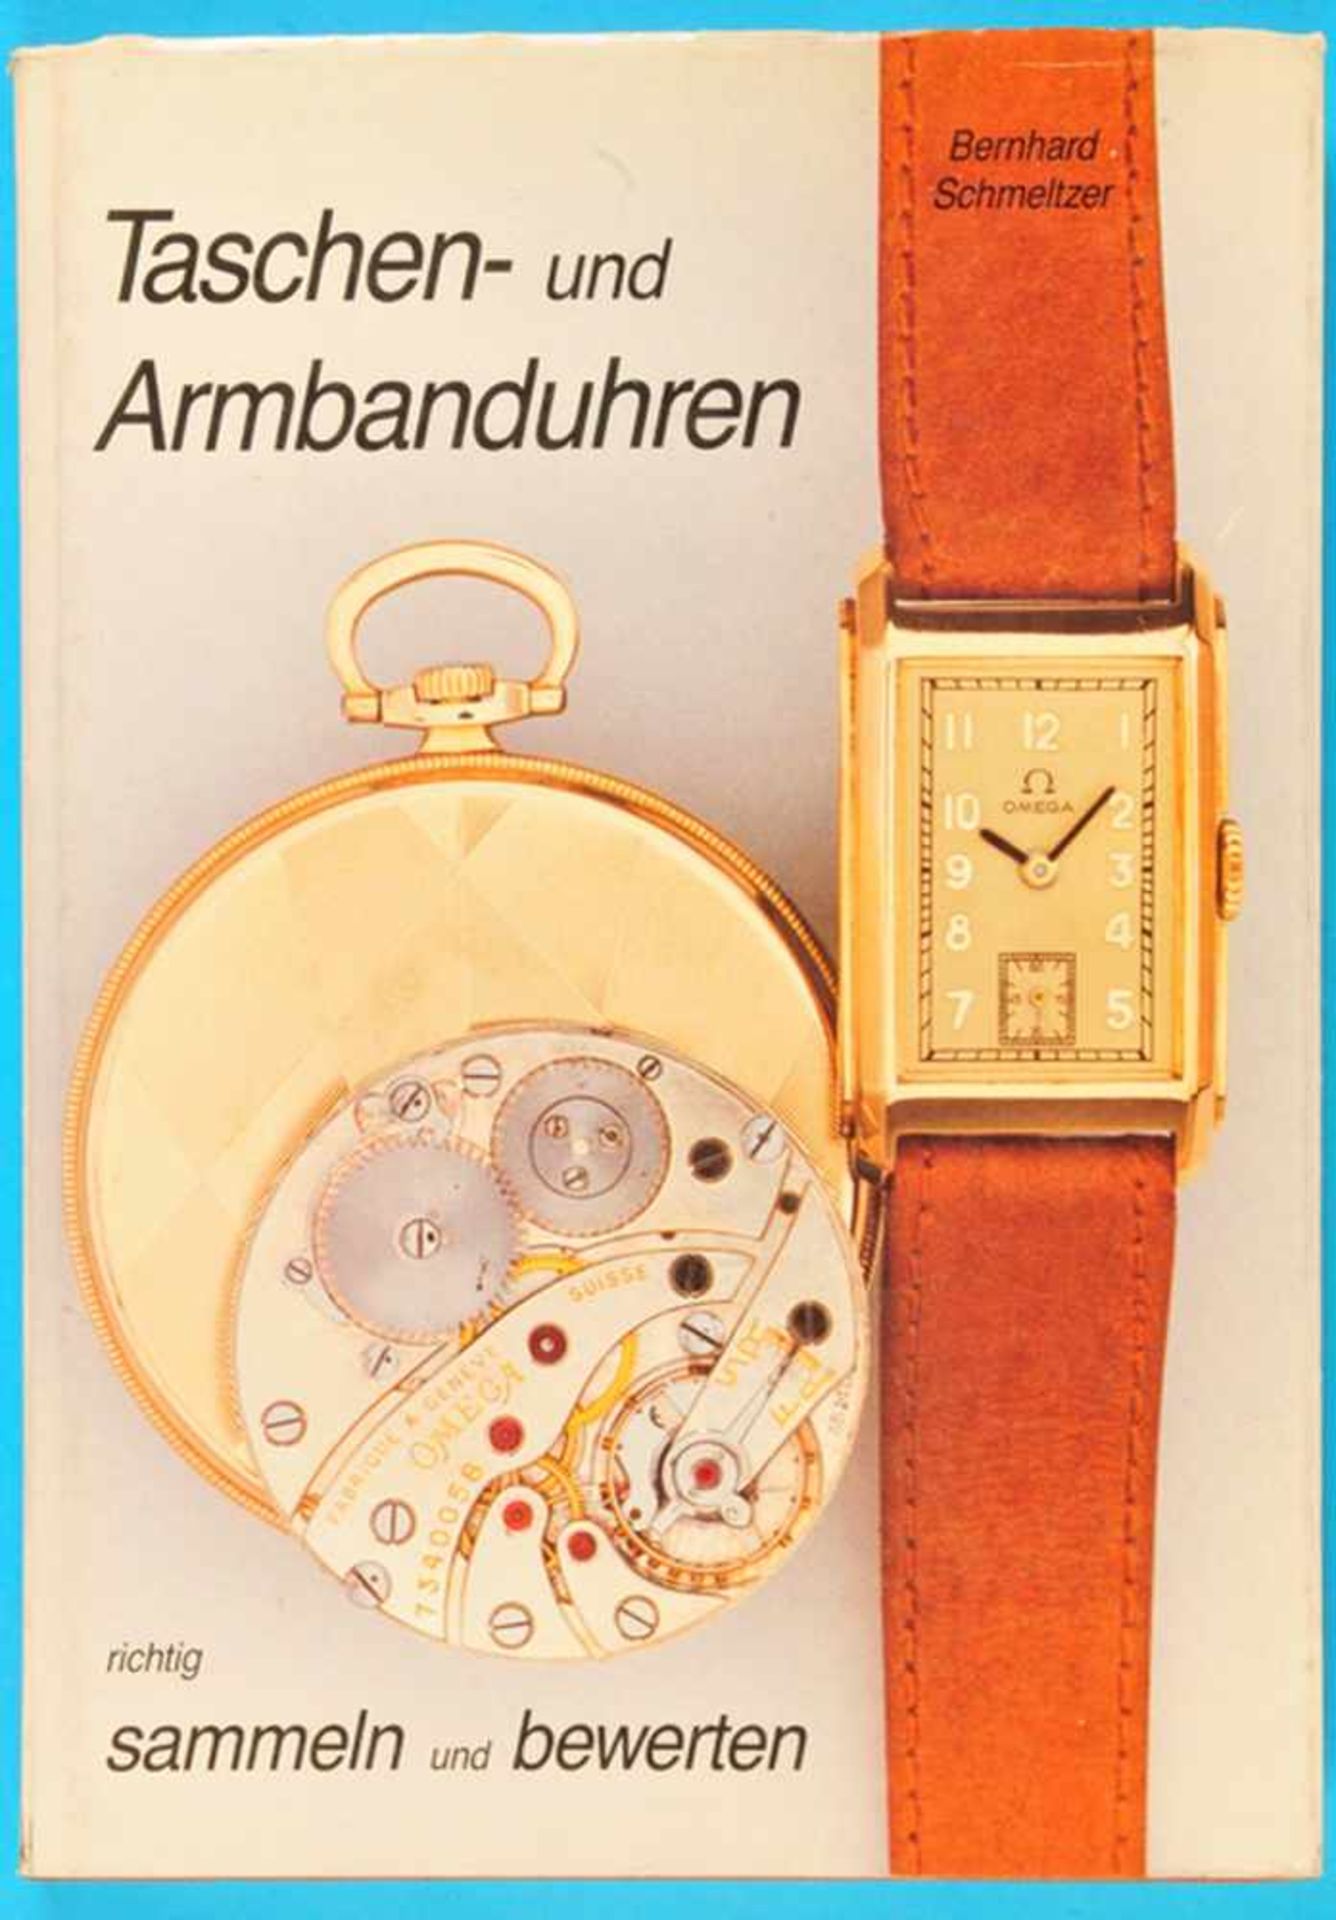 Bernhard Schmeltzer, Taschen- und Armbanduhren, richtig sammeln und bewerten,Wertberechnungen,